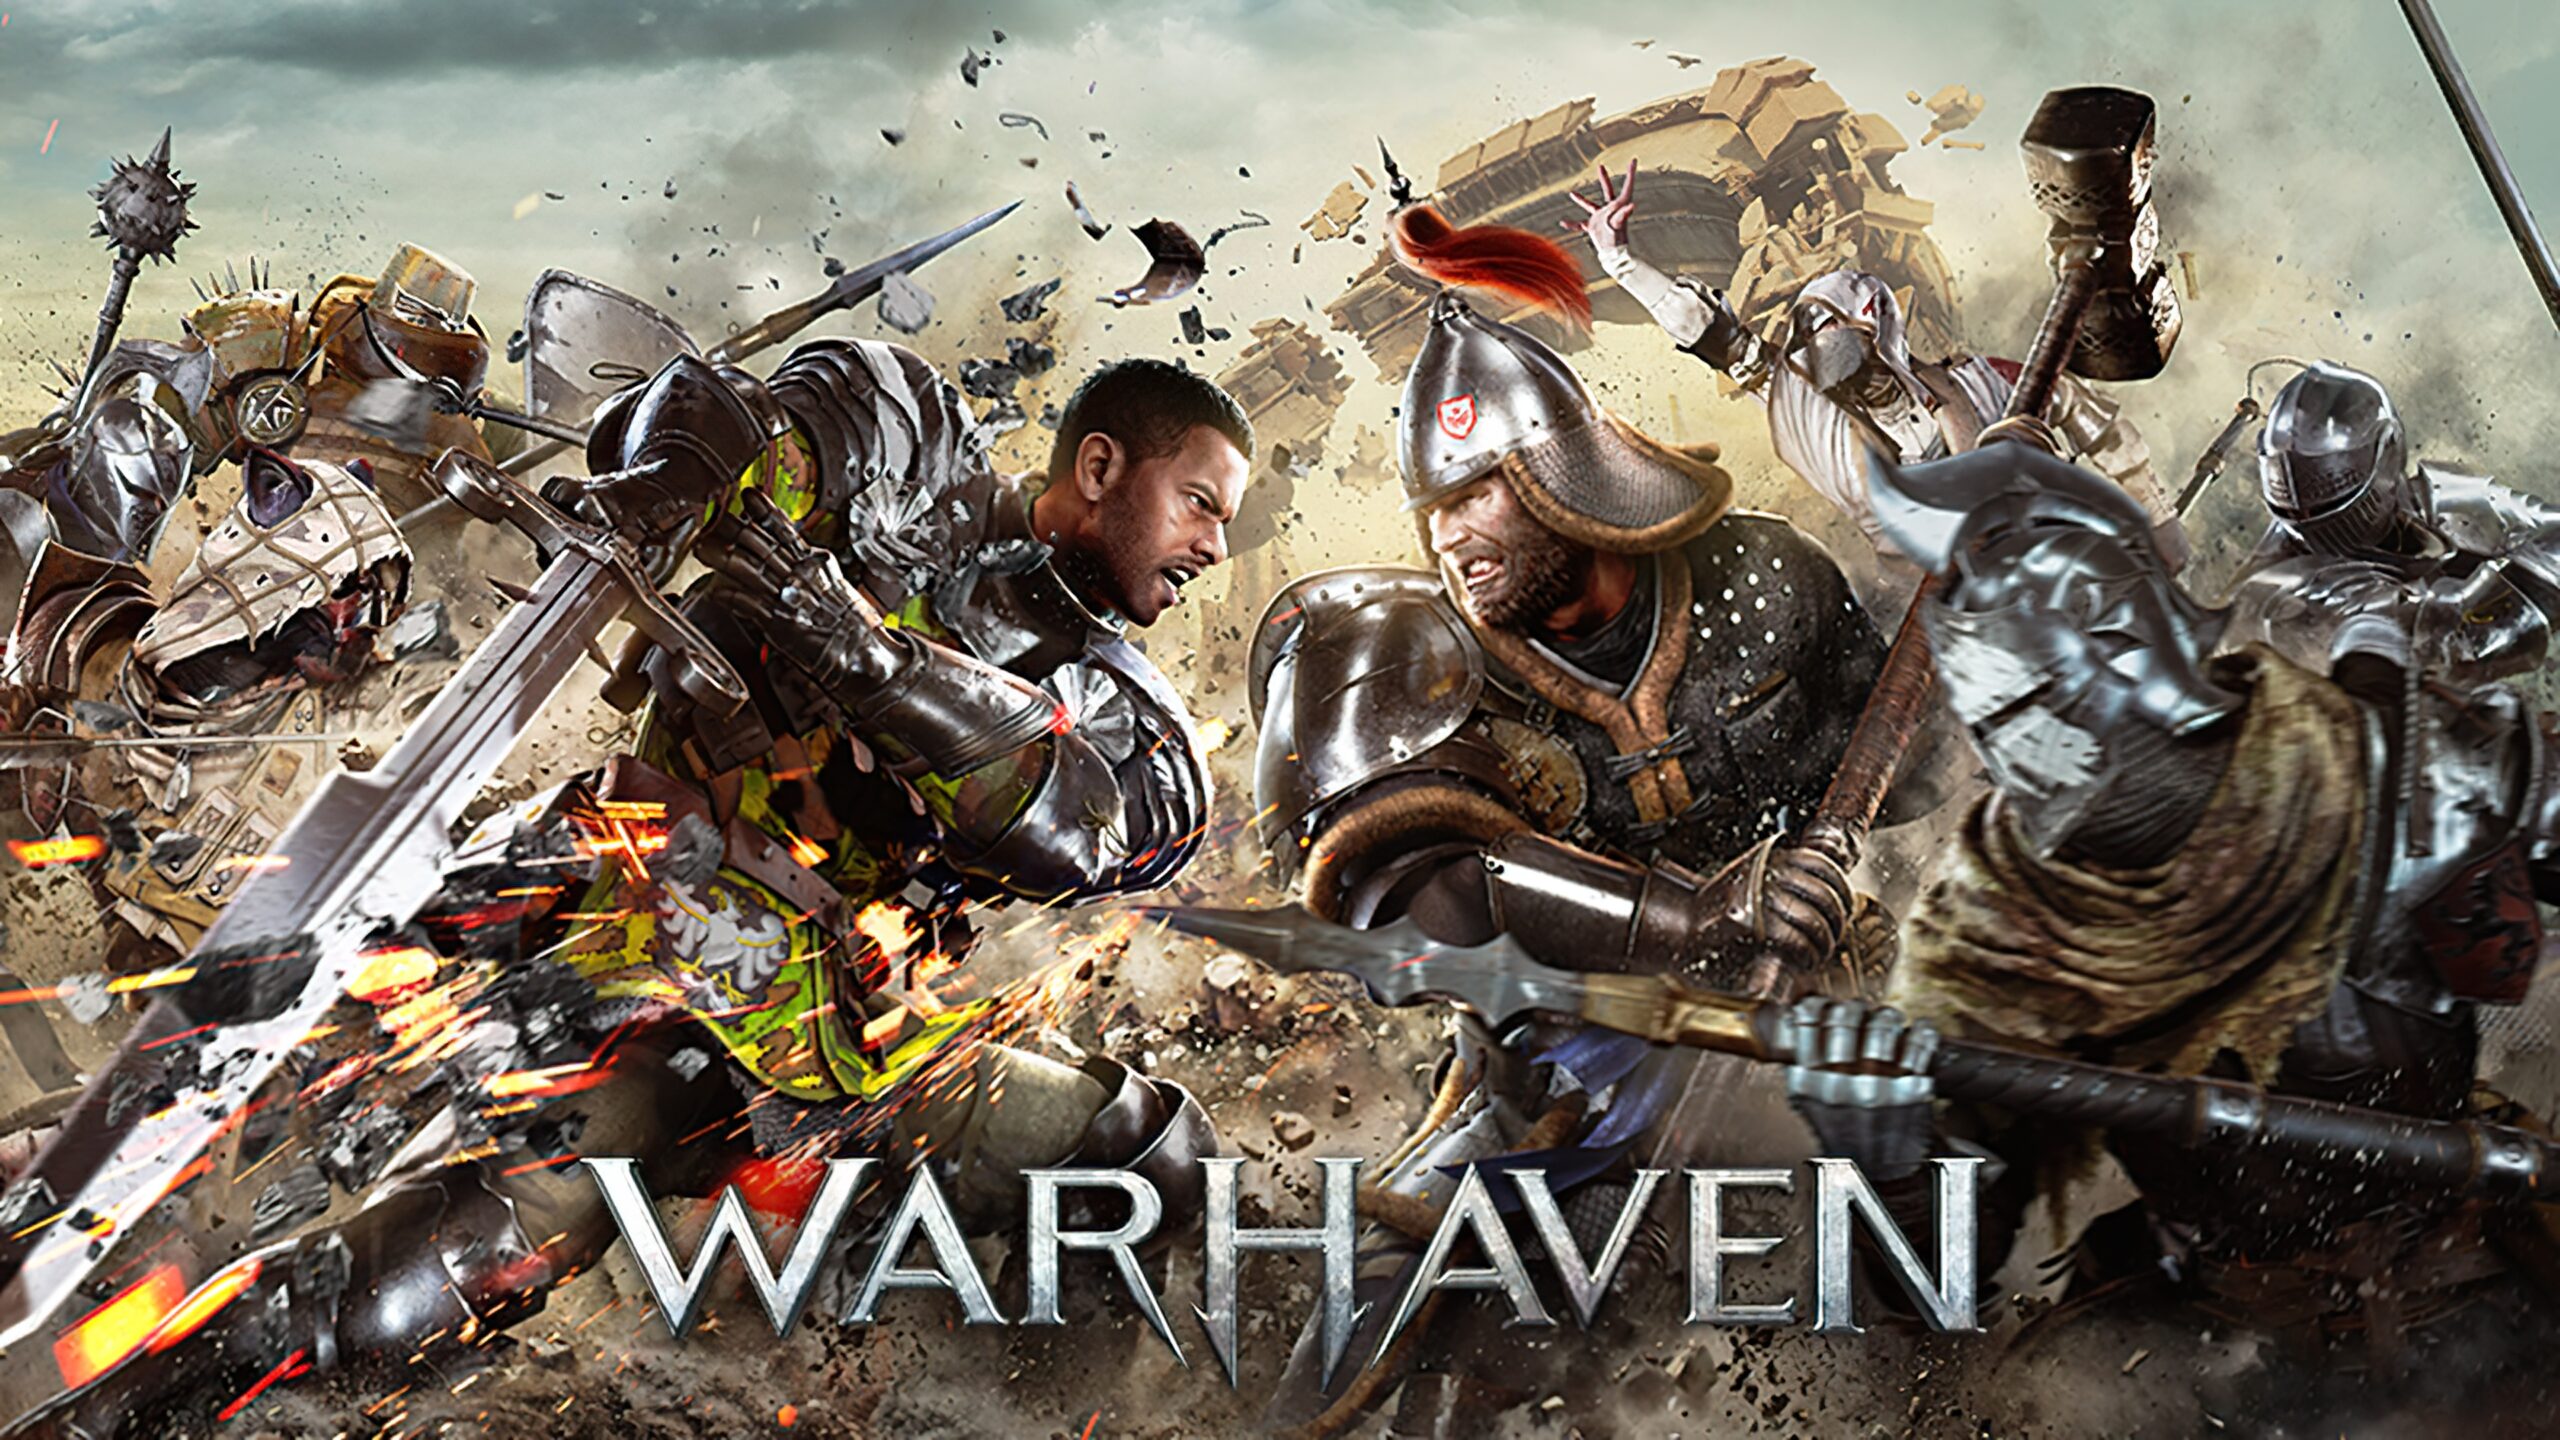 Warhaven-utvecklarna har publicerat en ny trailer för spelet, där de i synnerhet meddelade releasedatumet i tidig åtkomst - 21 september